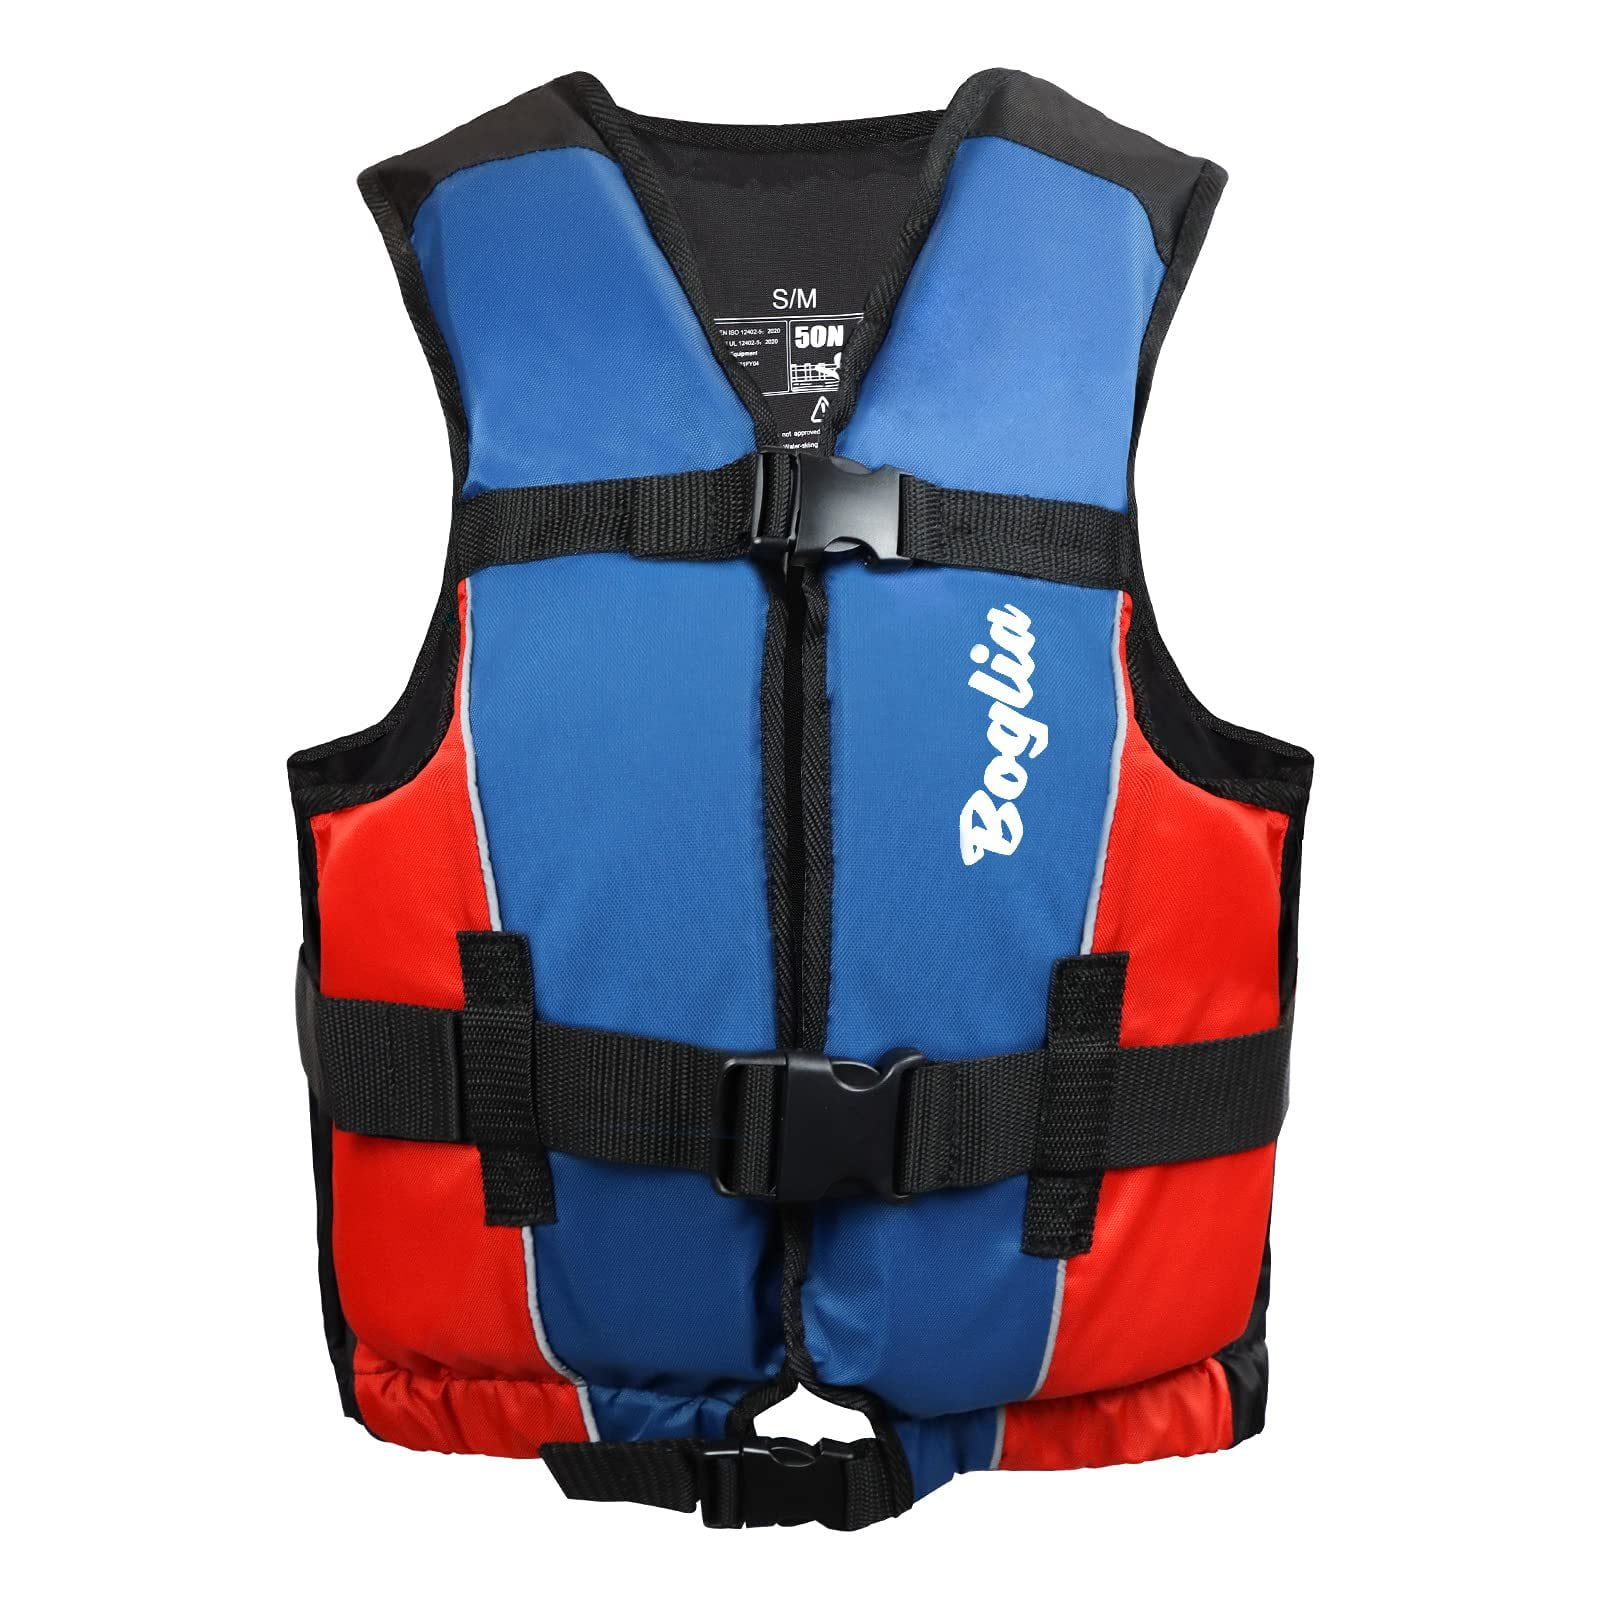 Gogokids Adult Life Jacket, Floating Swim Vest for Adults, Buoyancy Aid ...